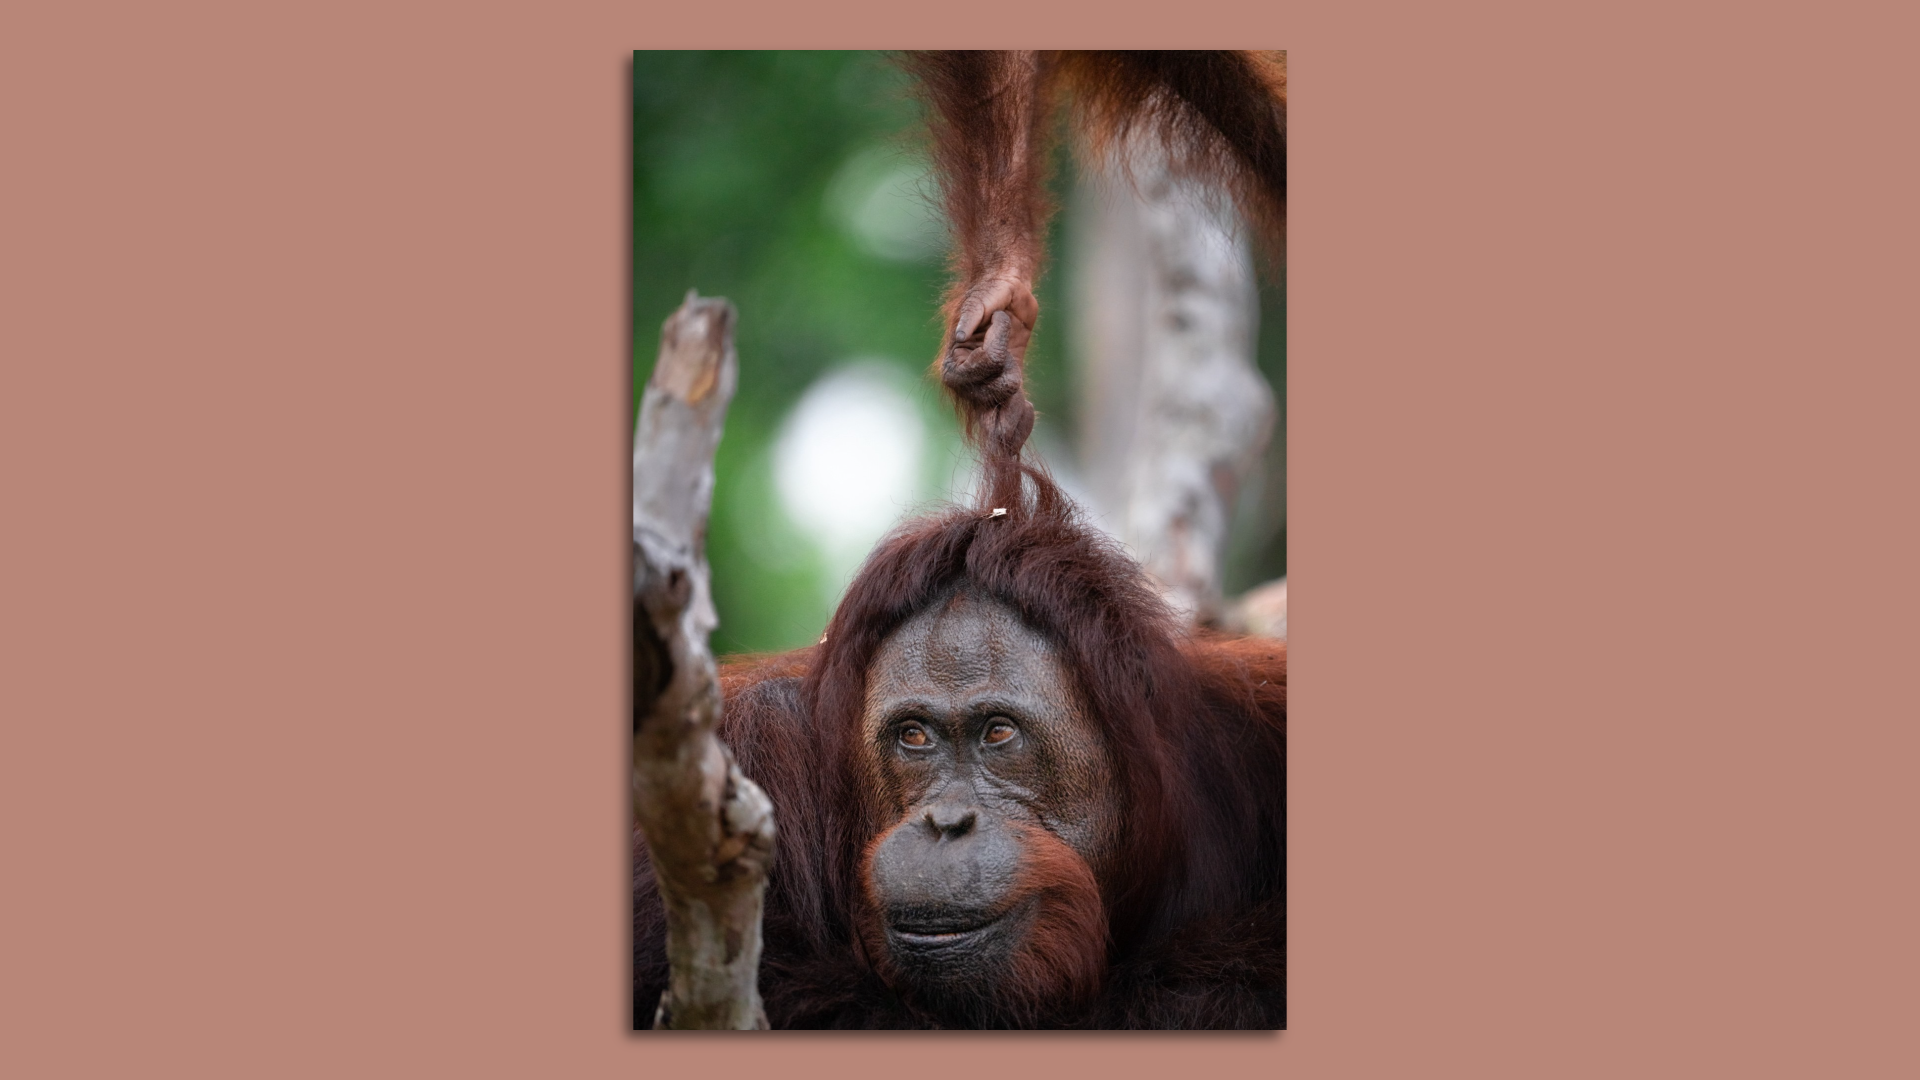 An orangutan pulls another orangutan's hair